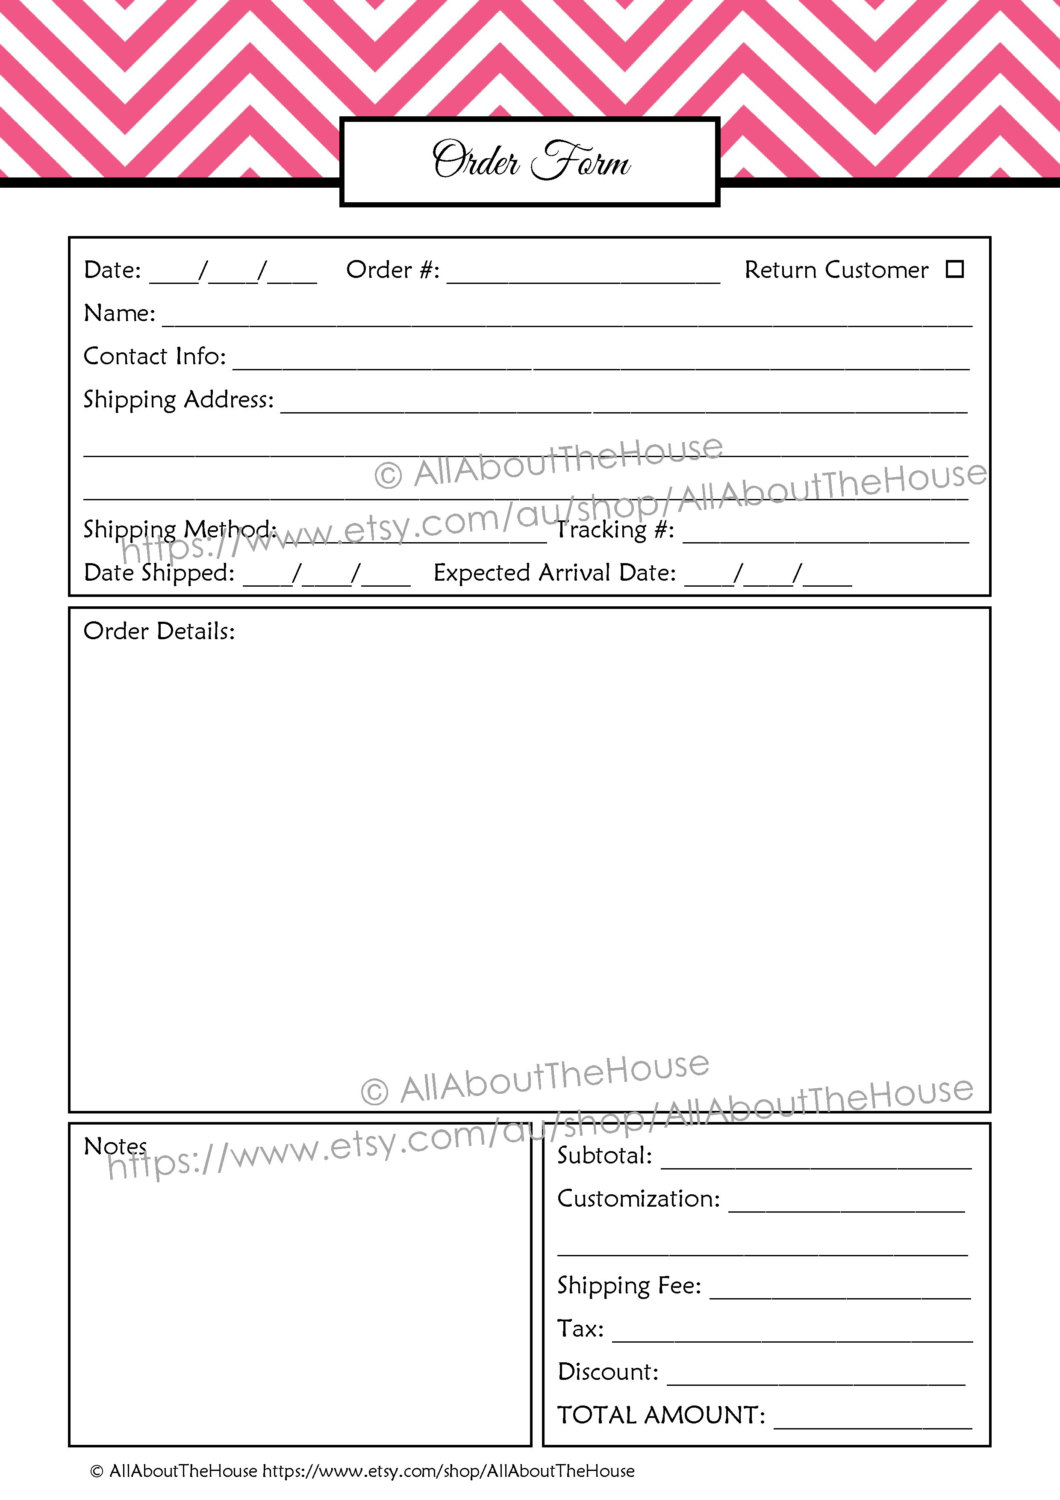 Order Form Custom Order Form Printable business planner